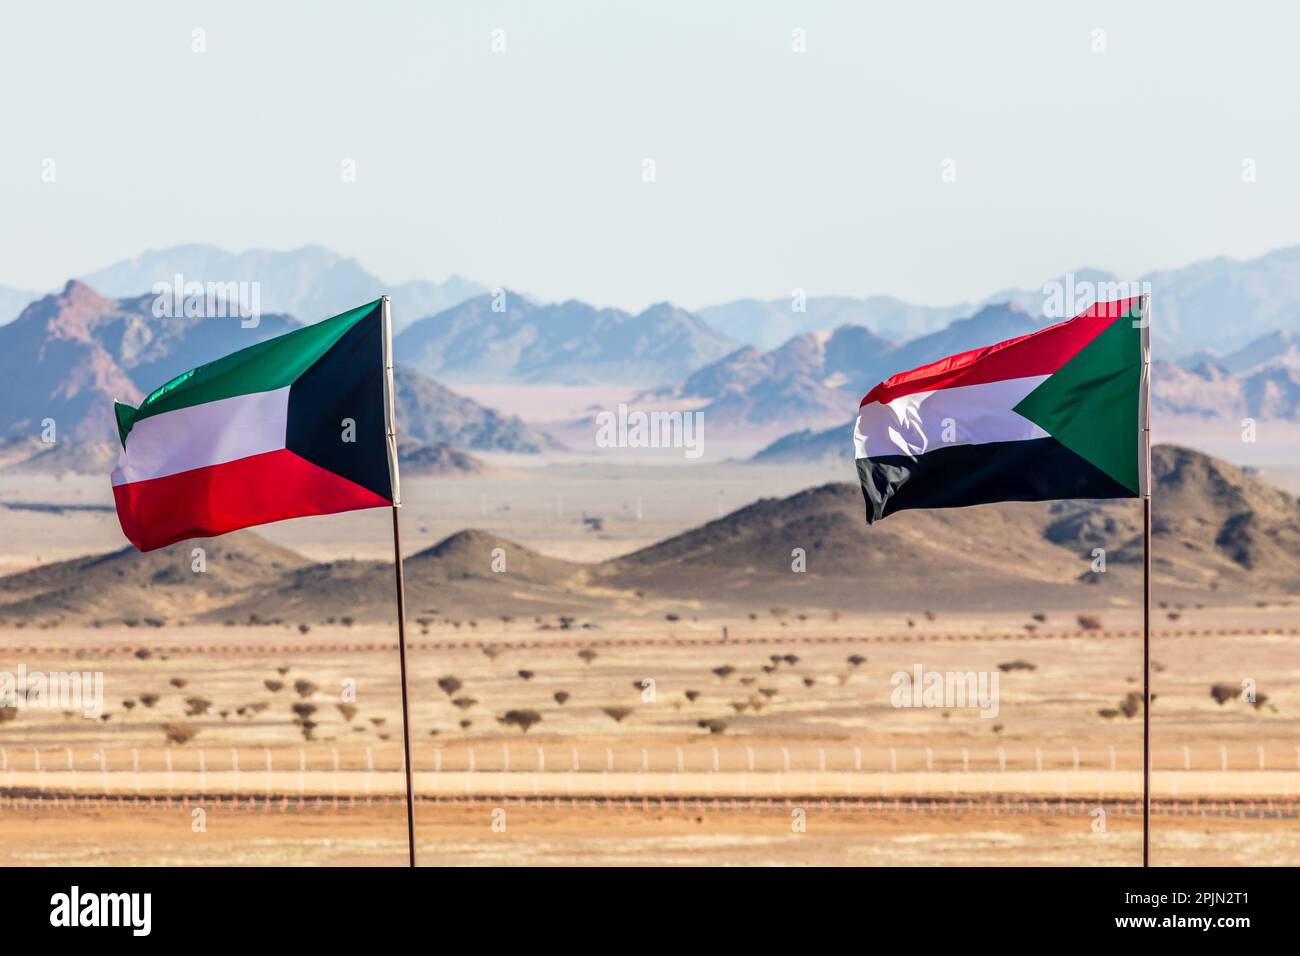 Kuwaitische und sudanesische Flaggen, die sich im Wind versammeln, in der saudiarabischen Wüste mit Bergen im Hintergrund, Al Ula, Saudi-Arabien Stockfoto